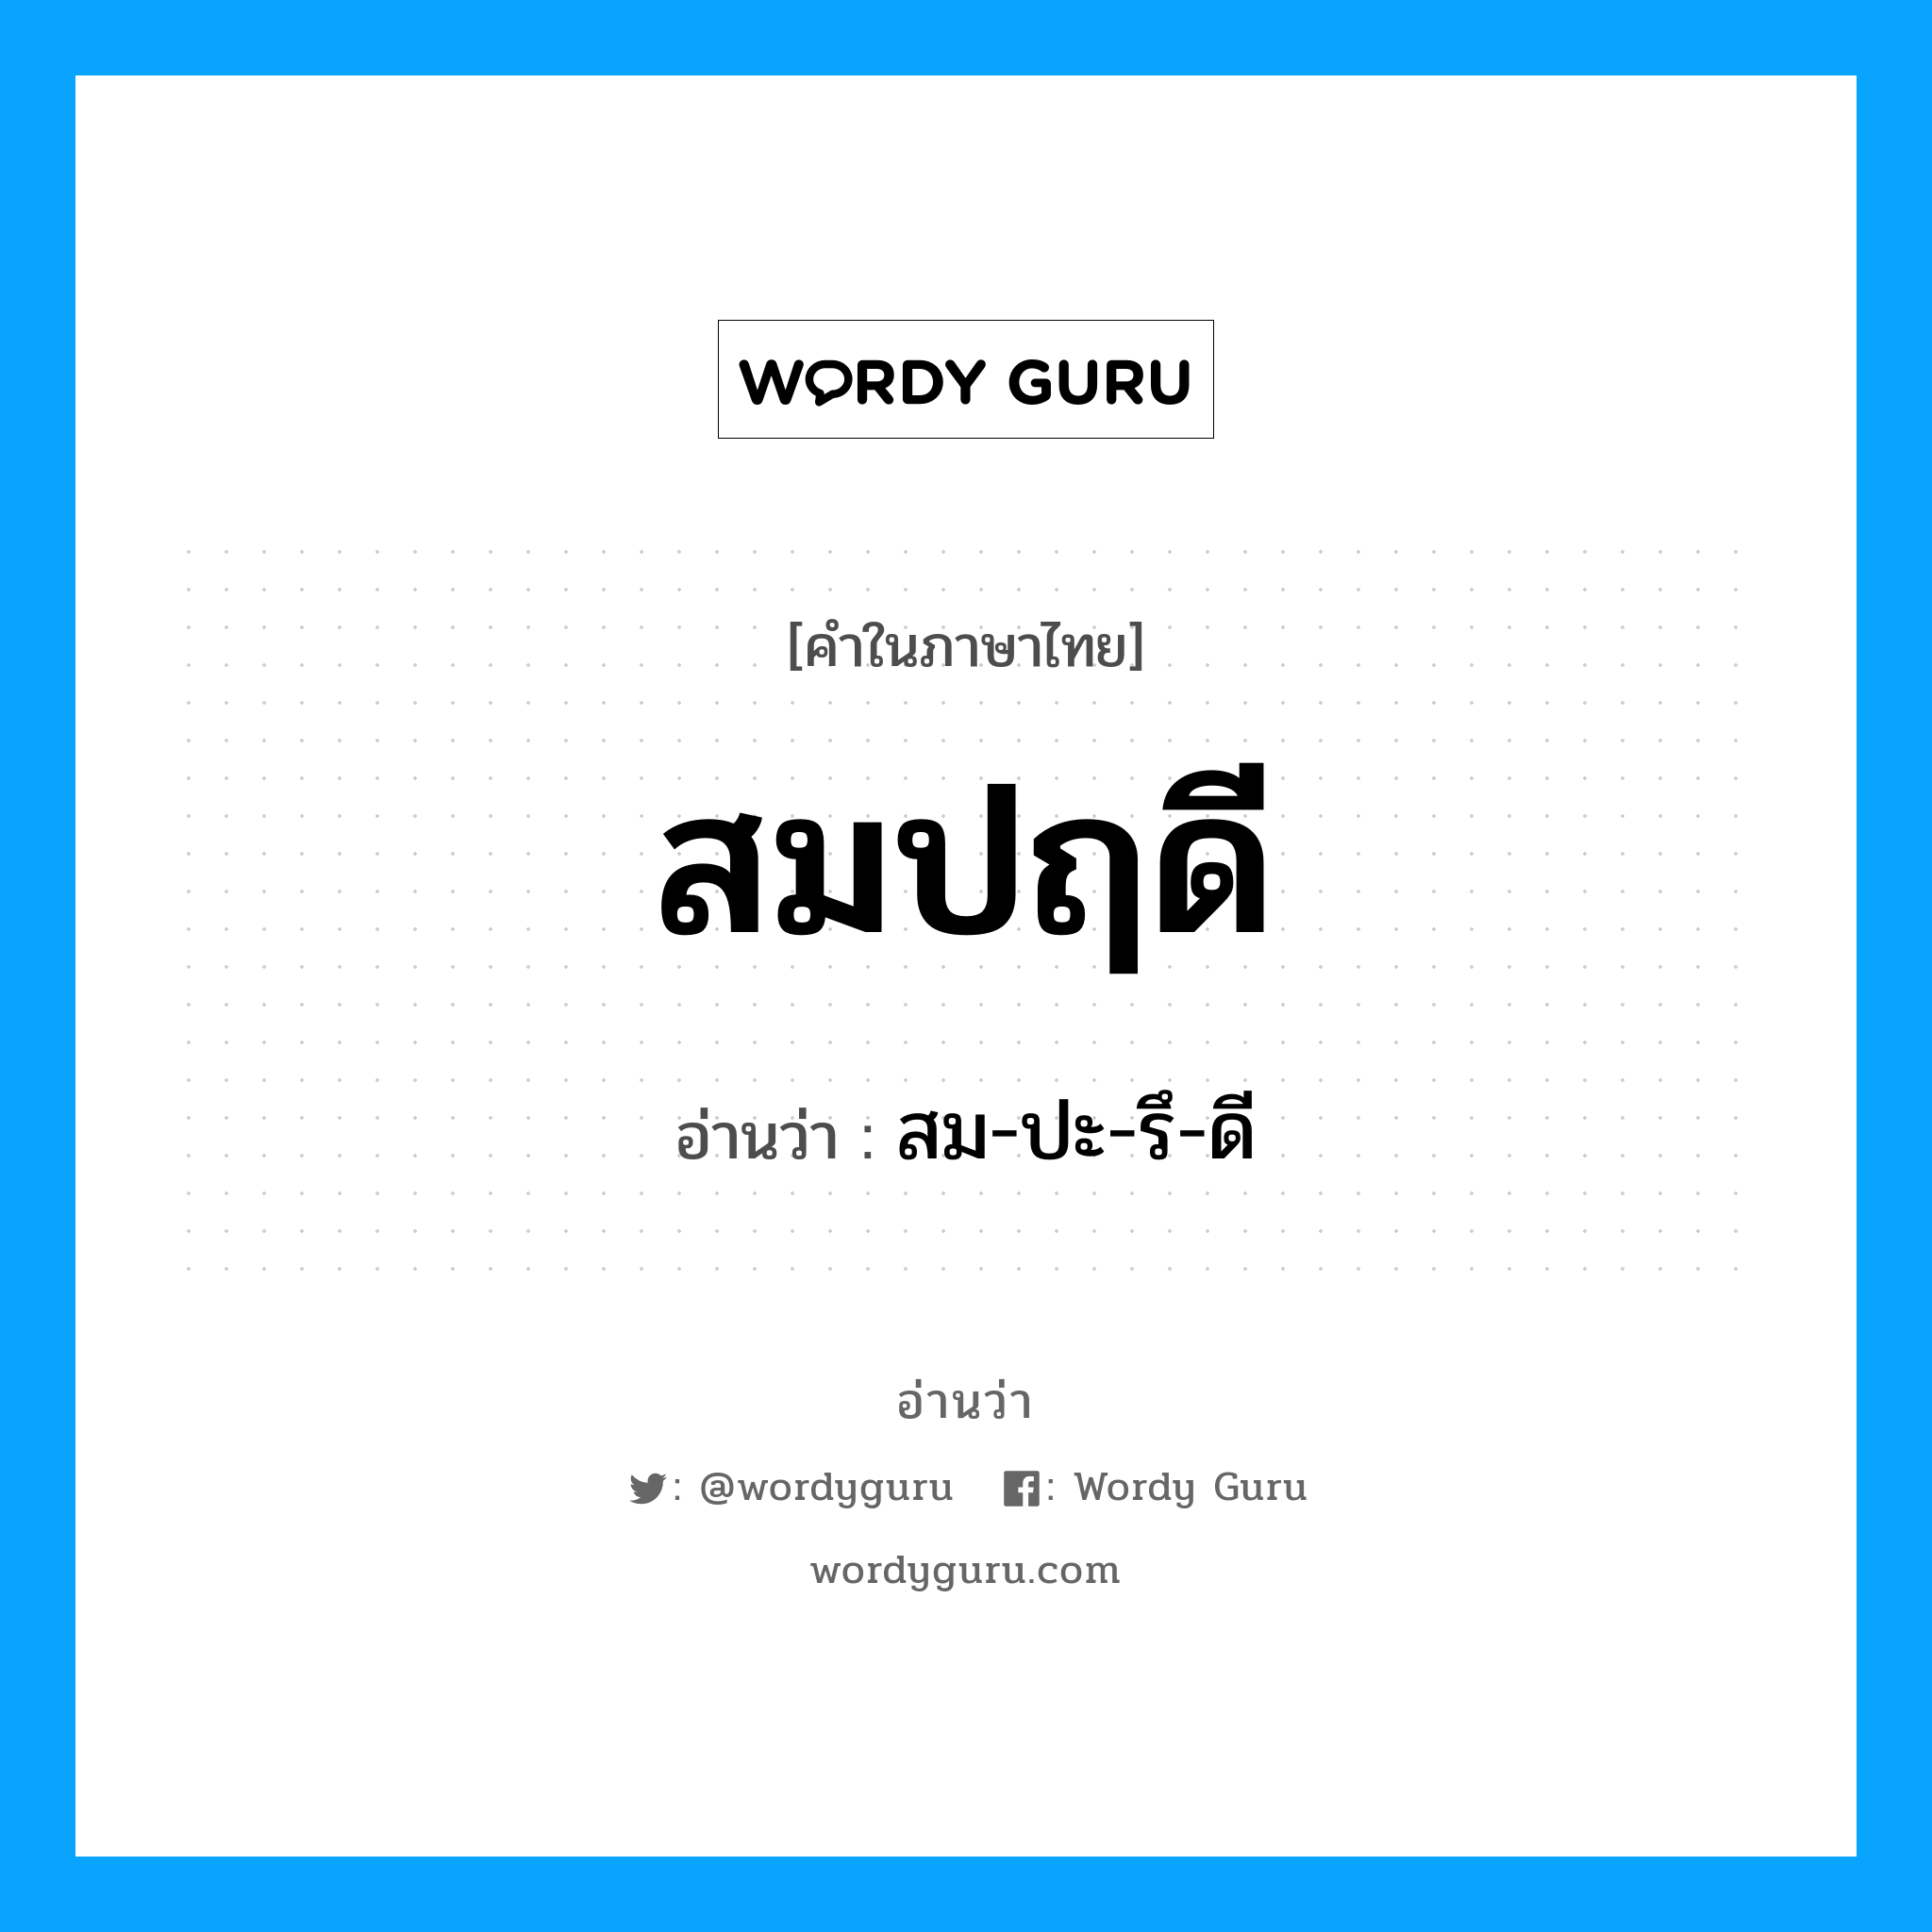 สม-ปะ-รึ-ดี เป็นคำอ่านของคำไหน?, คำในภาษาไทย สม-ปะ-รึ-ดี อ่านว่า สมปฤดี